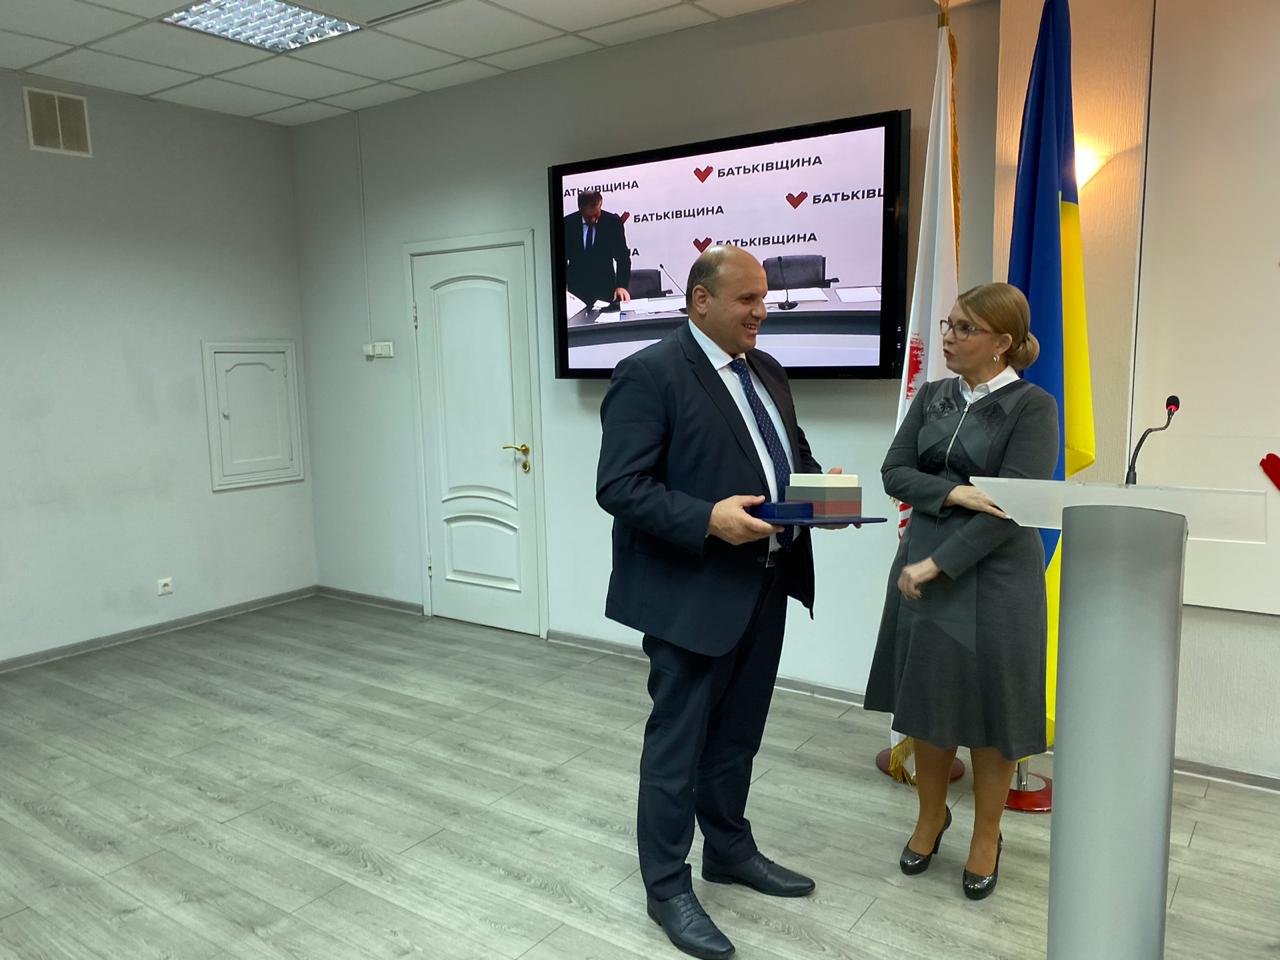 Тимошенко відзначила Івана Мунтяна за сумлінну працю і з нагоди 20-ліття 'Батьківщини'